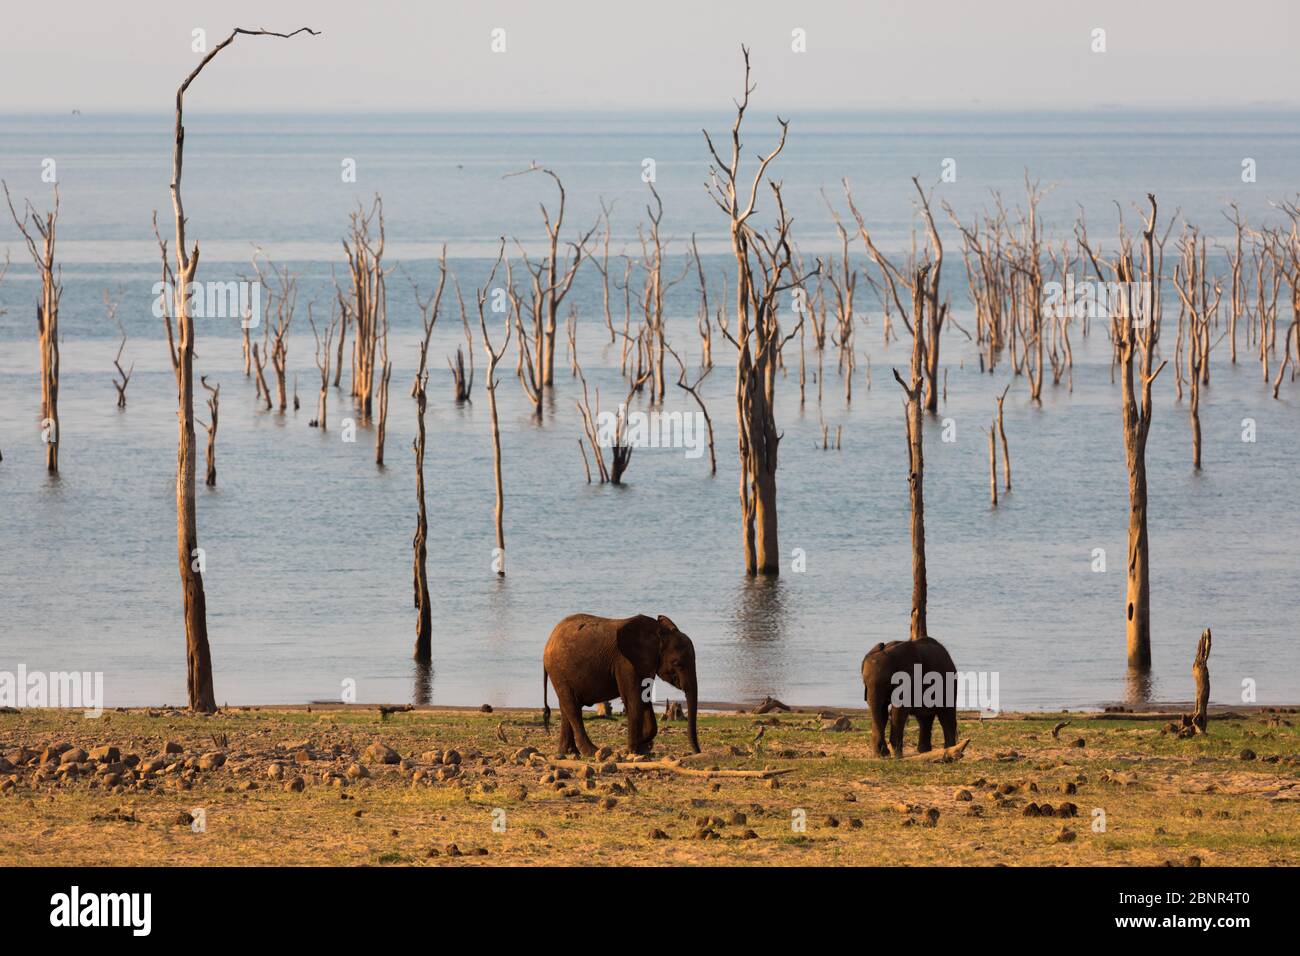 Elefants dans le parc national de Matusadona près du camp de safari de Rhino, Zimbabwe Banque D'Images